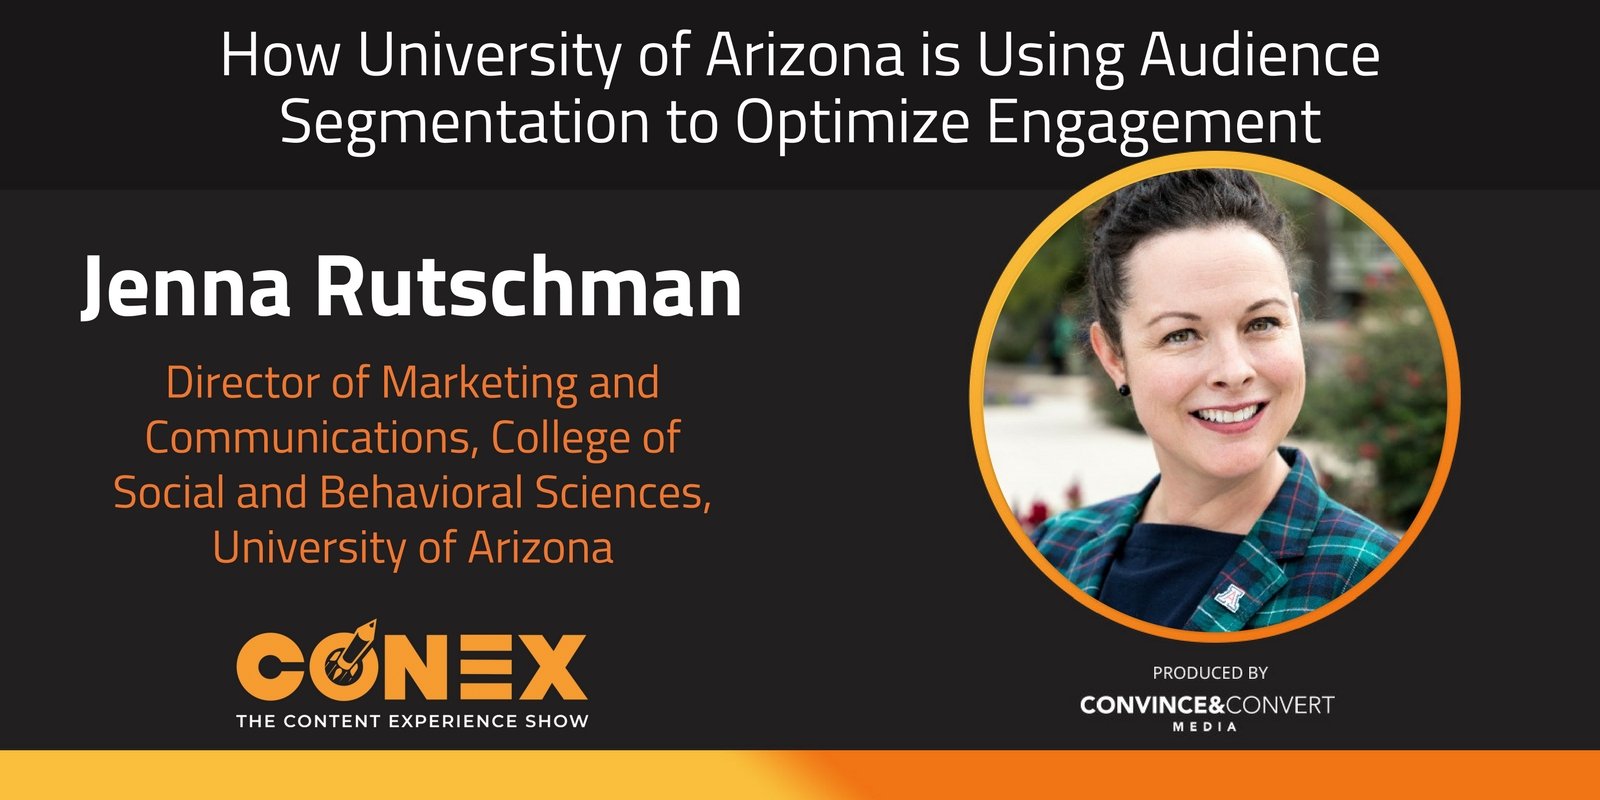 How University of Arizona is Using Audience Segmentation to Optimize Engagement